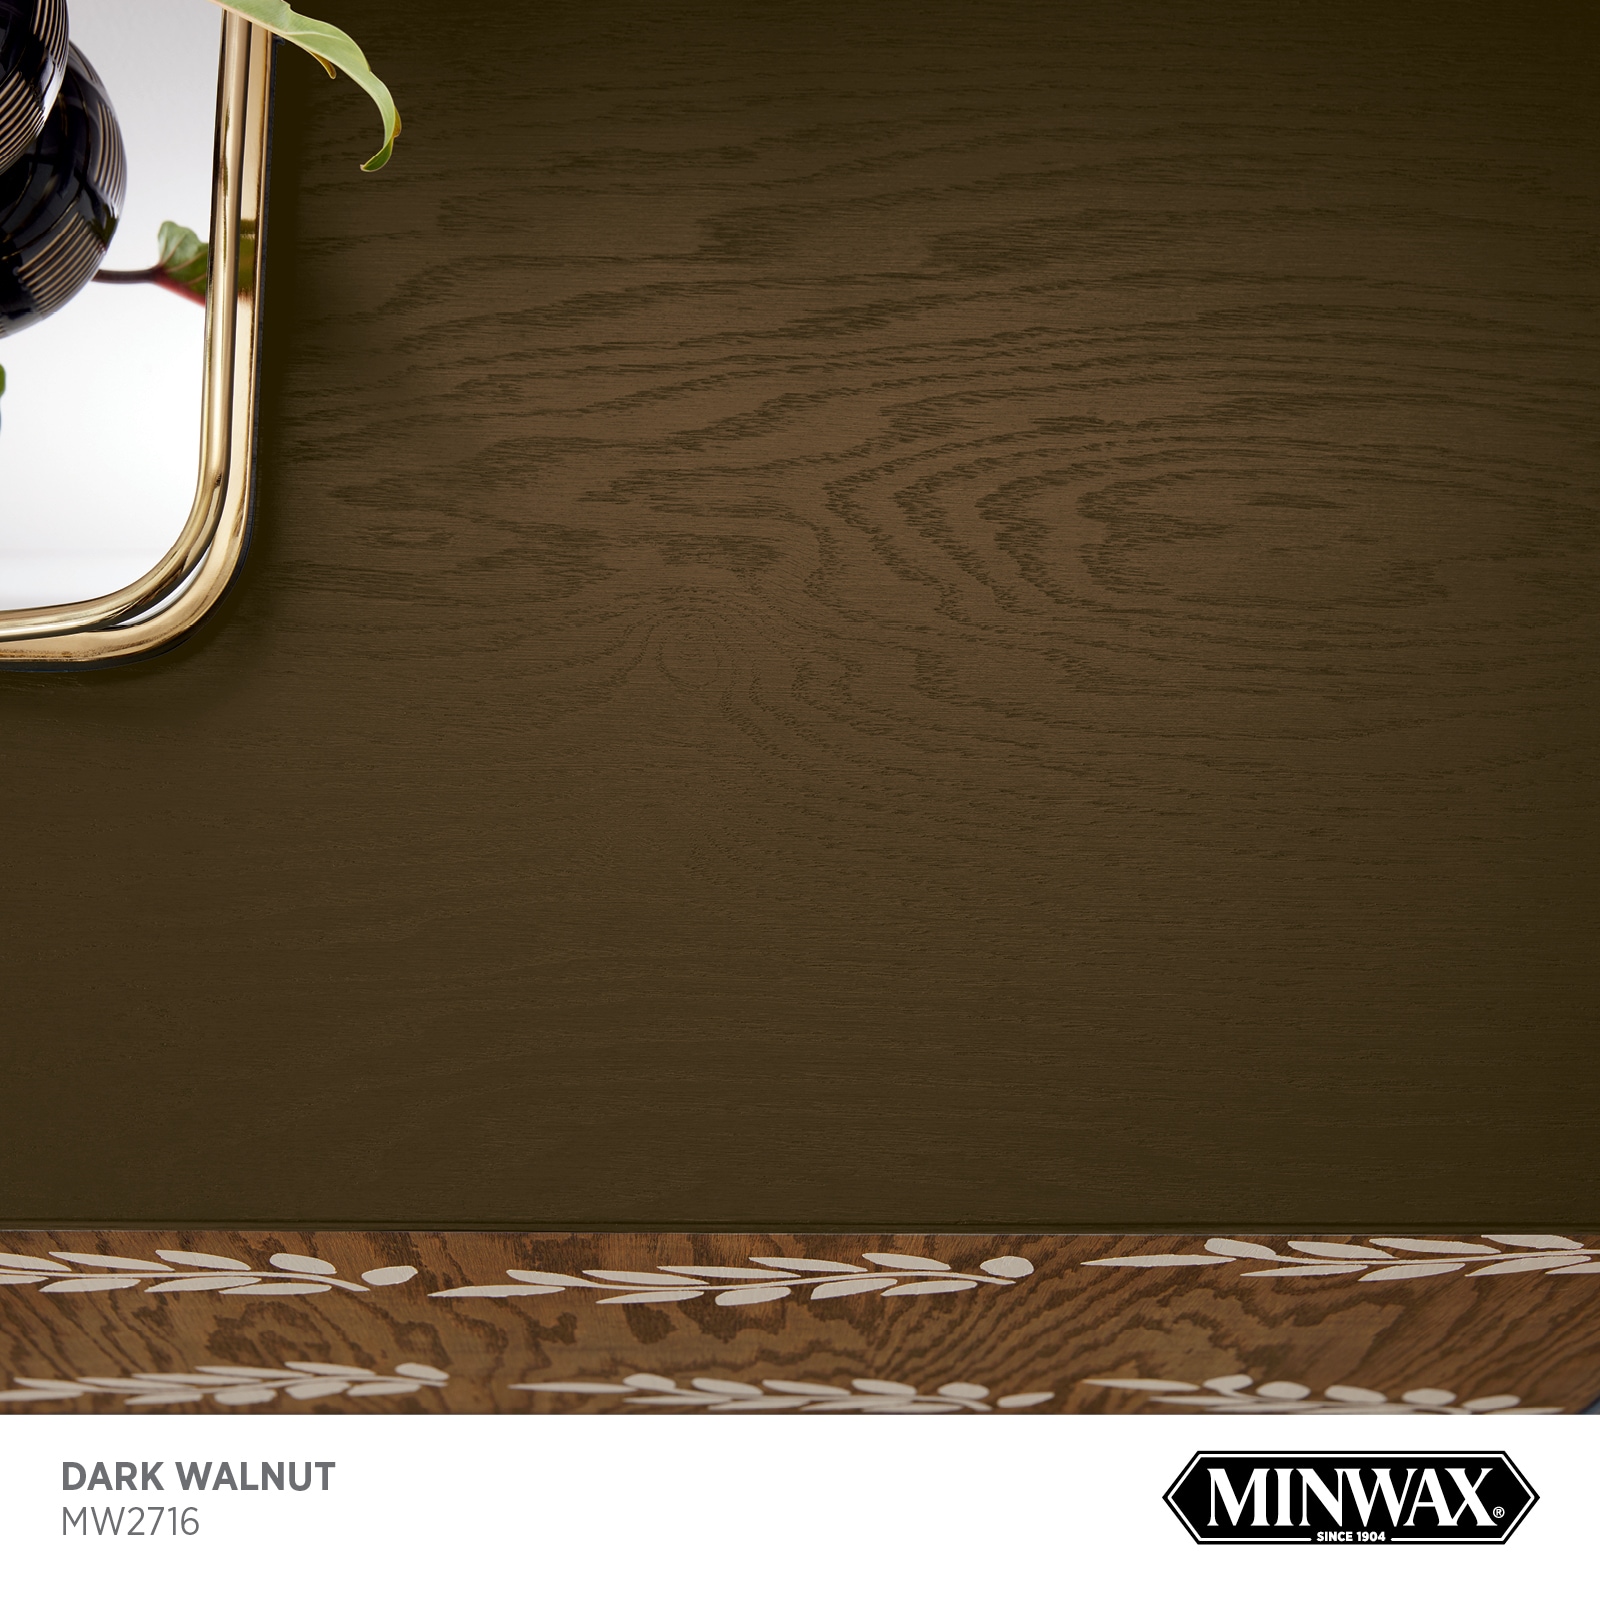 Minwax Wood Finish Water-Based Dark Walnut Mw2716 Semi-Transparent